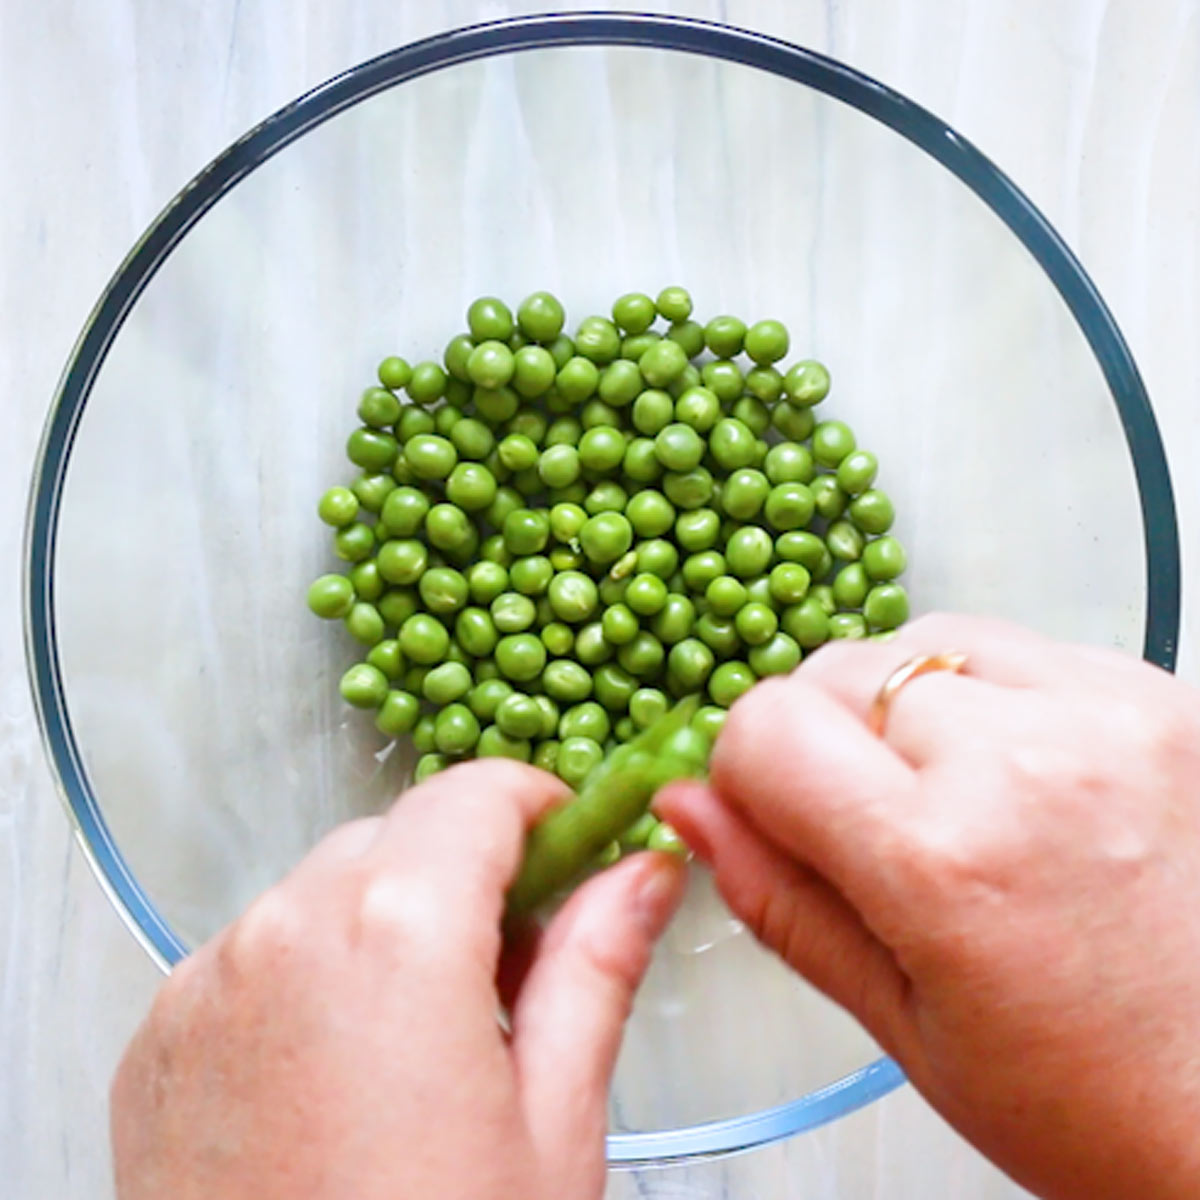 shelling green peas